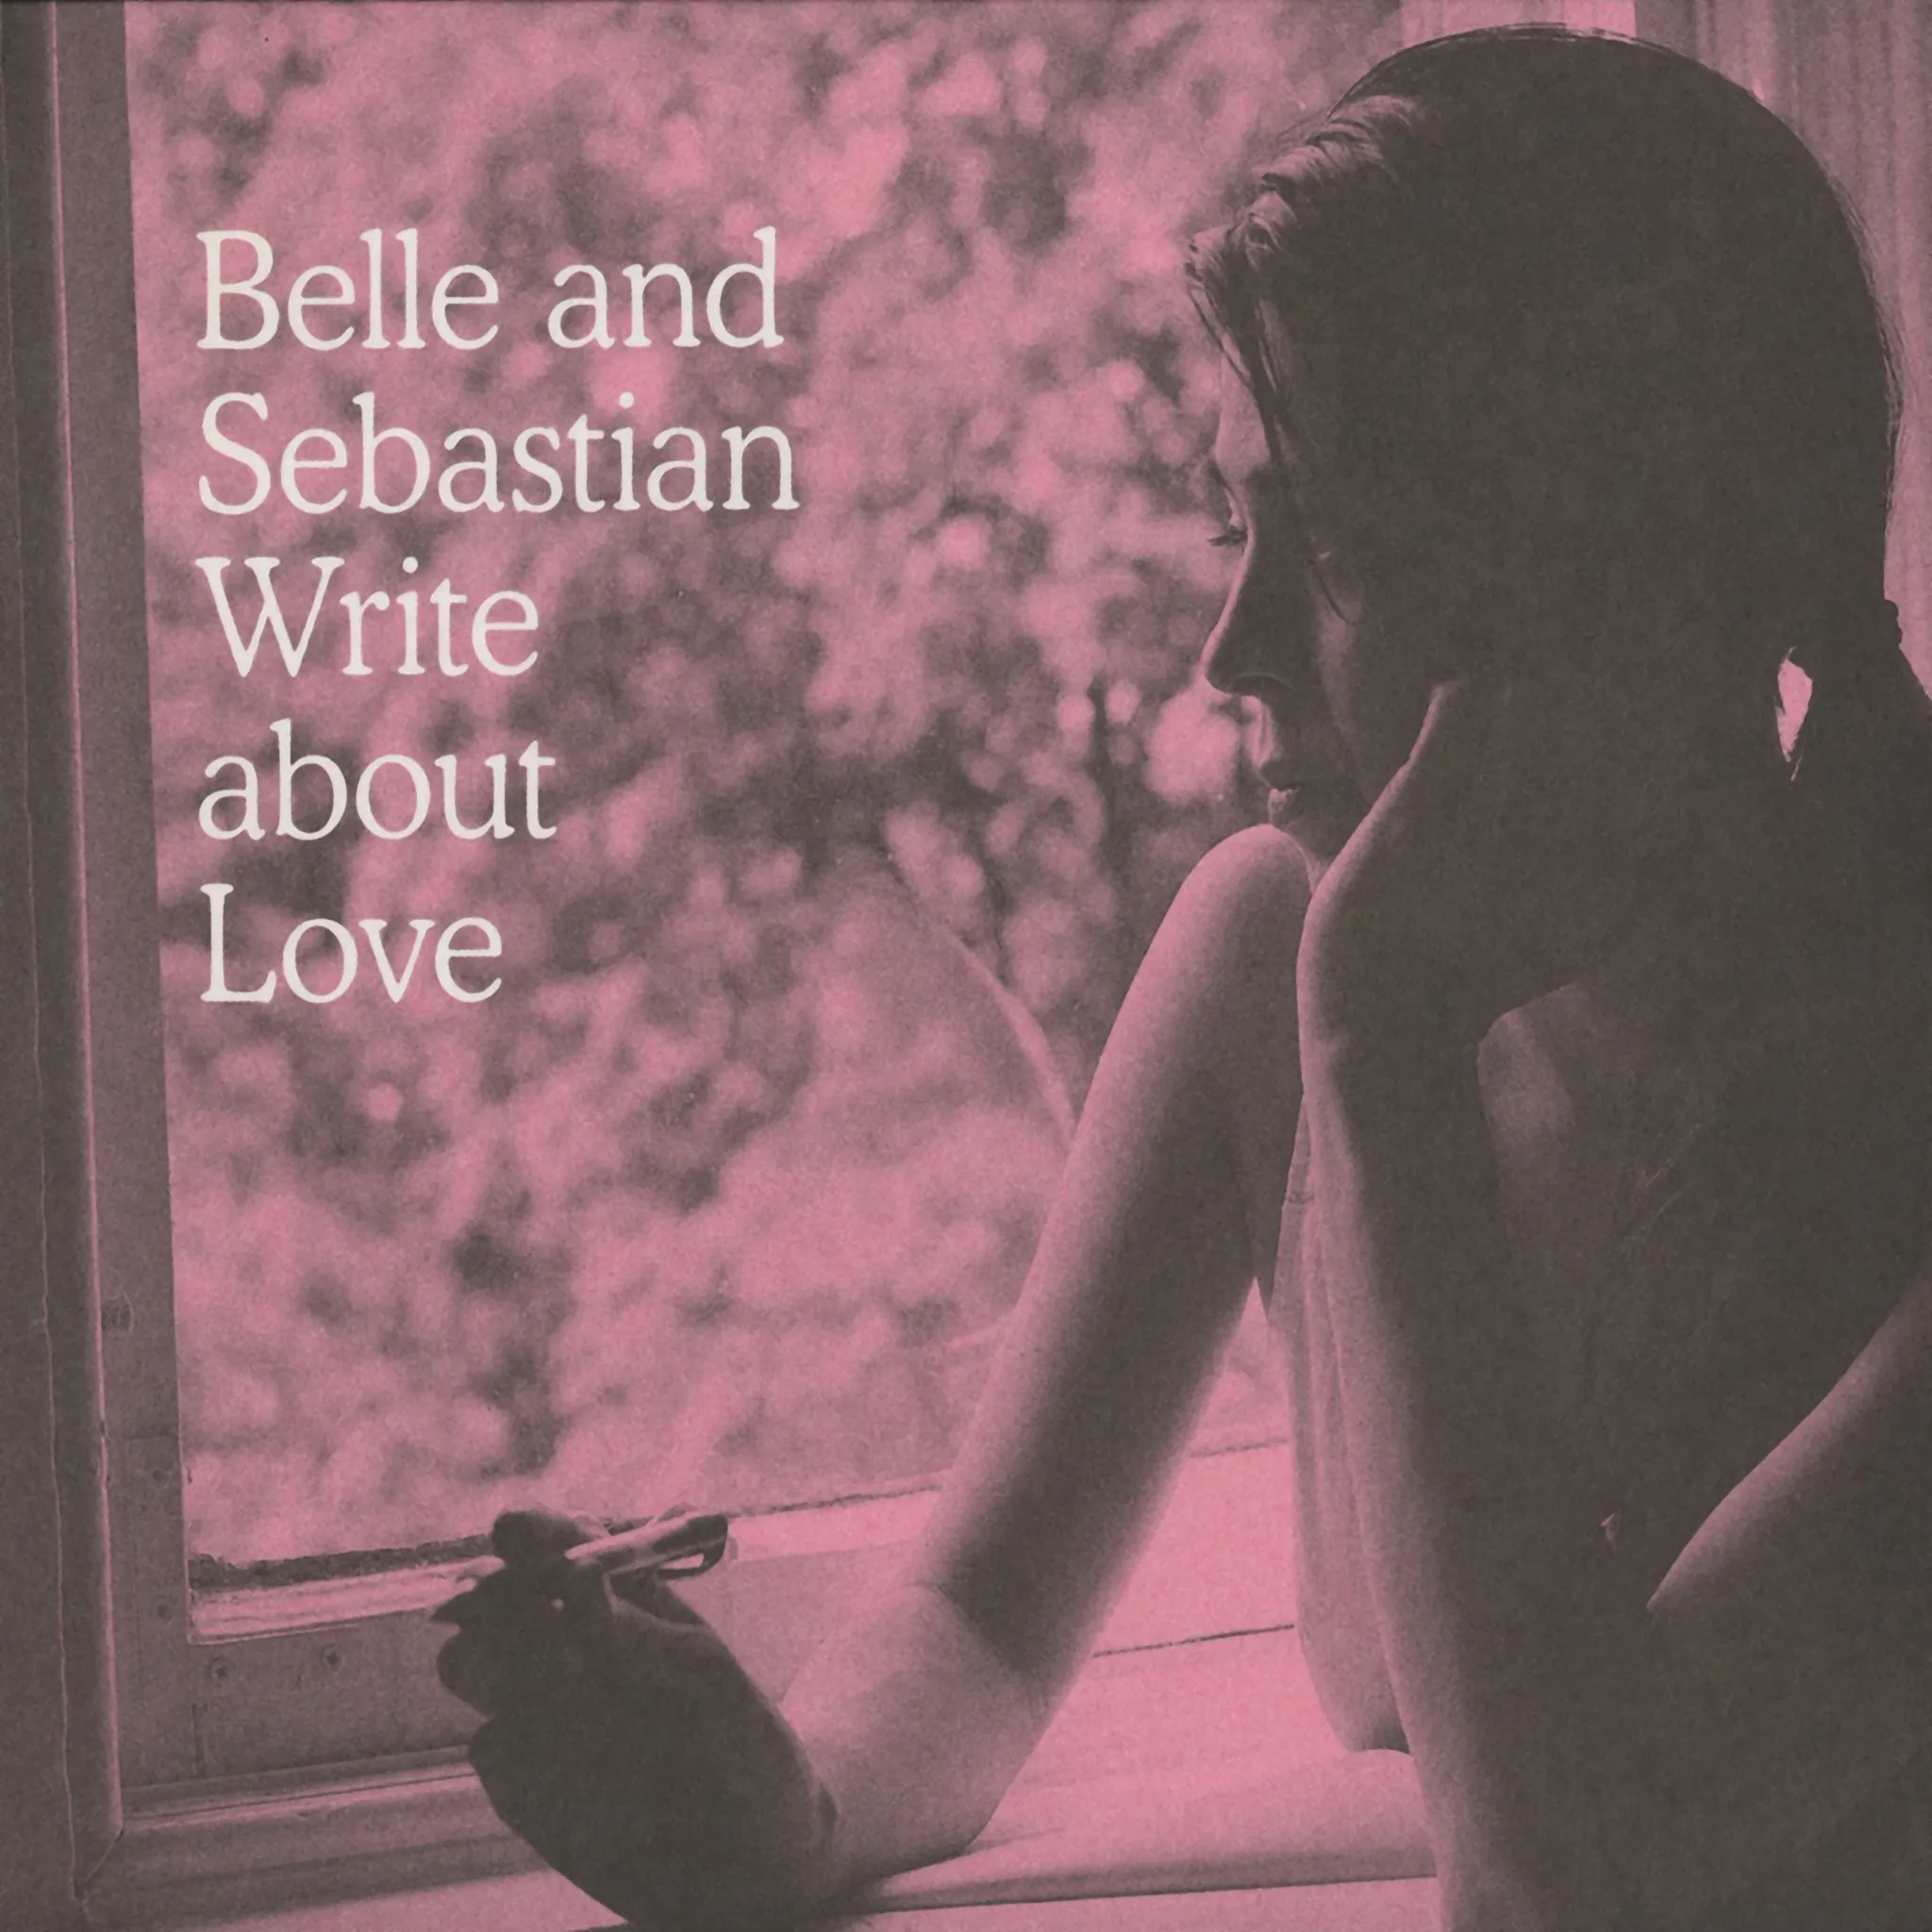 Belle and Sebastian - Belle and Sebastian Write About Love artwork